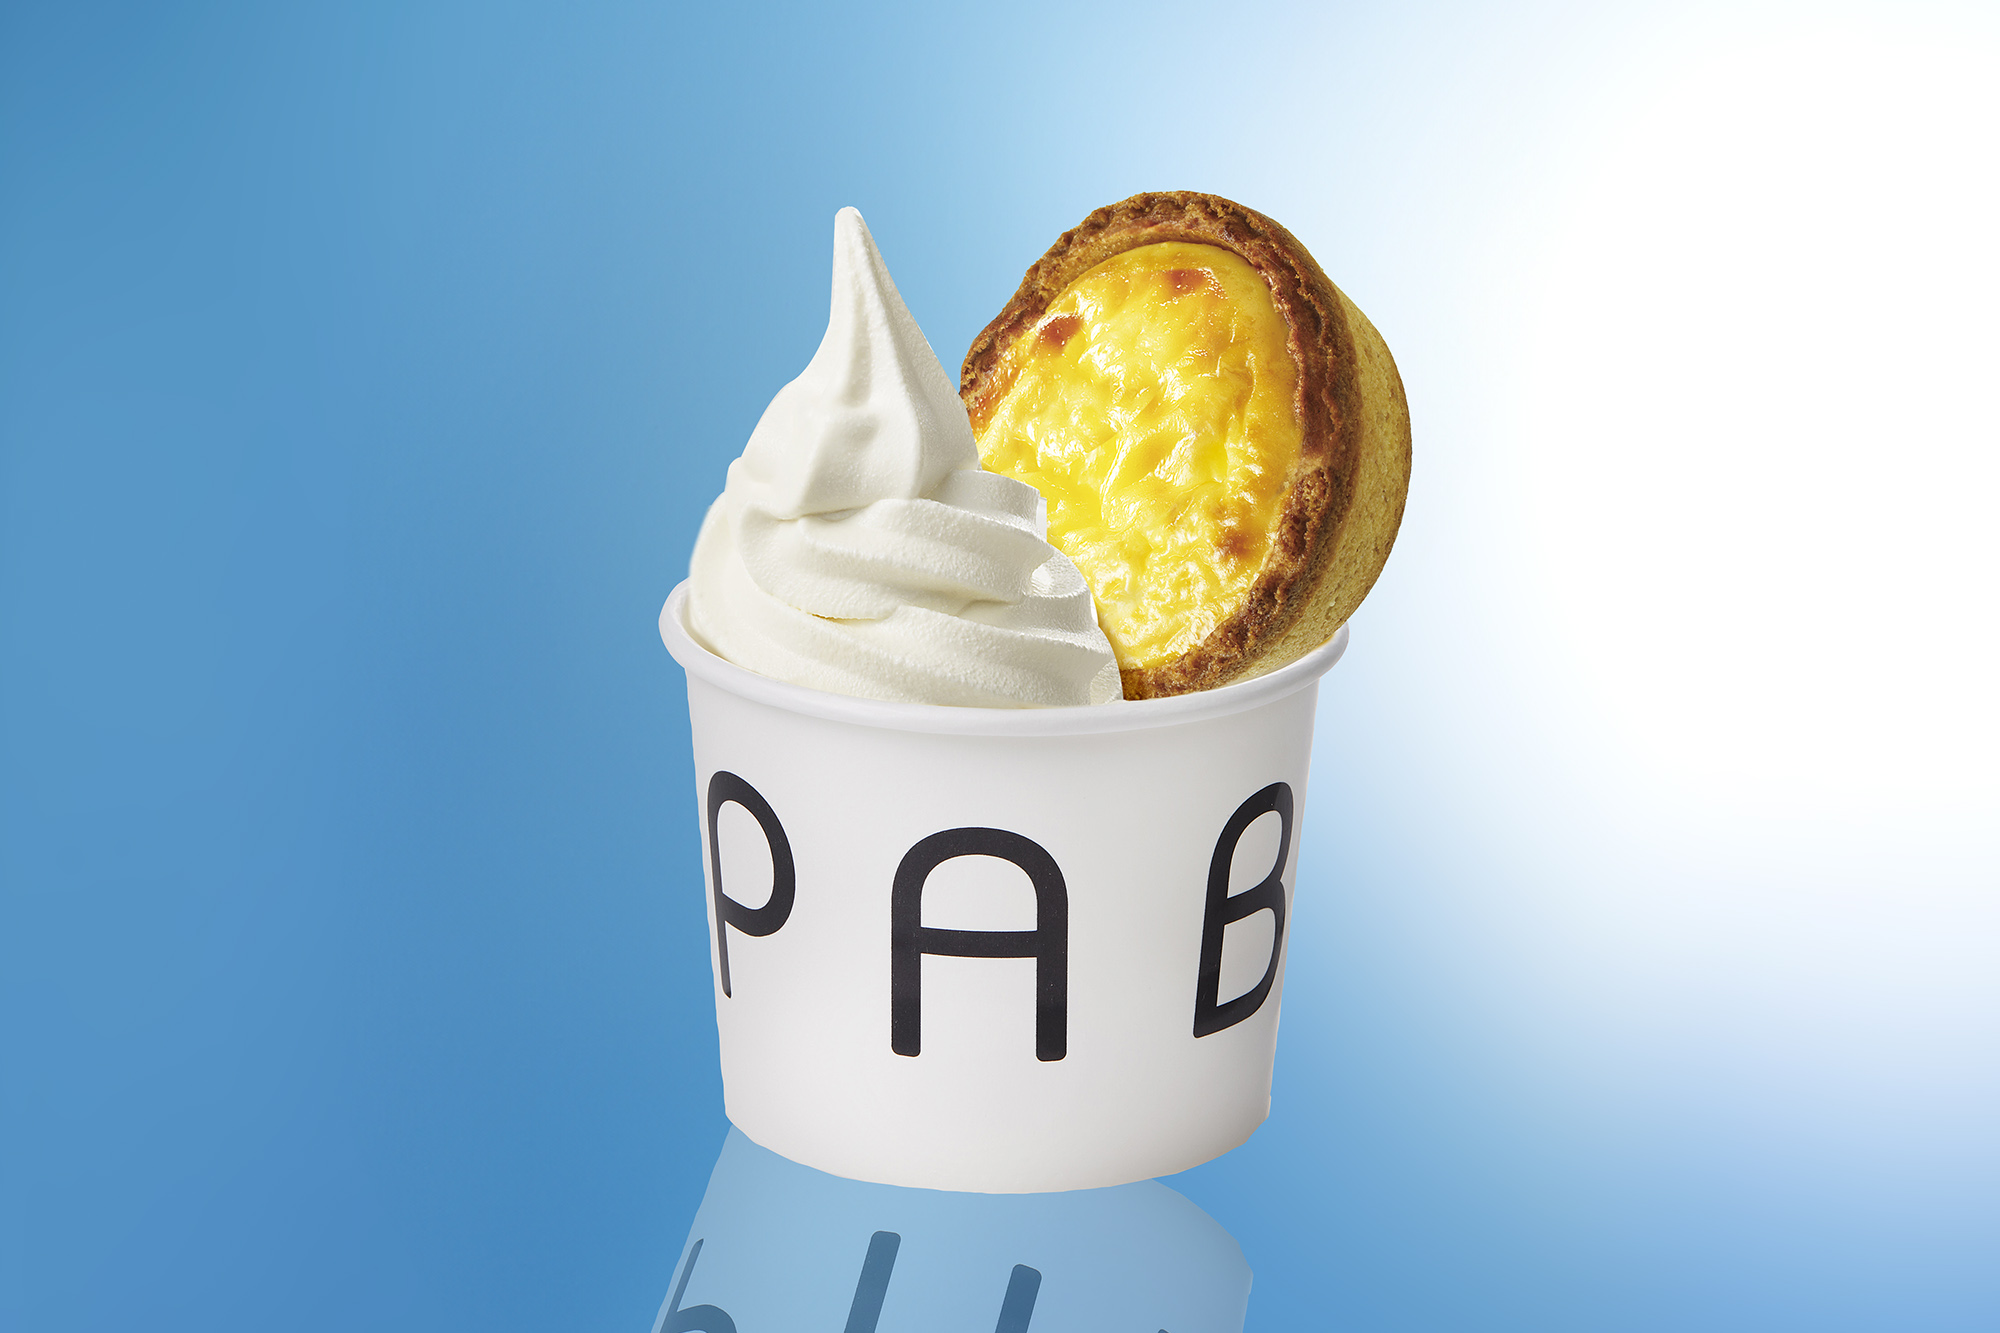 2024年4月1日(月)、pablo miniとチーズソフトクリームが同時に味わえる『パブロミニツイスト』が登場。